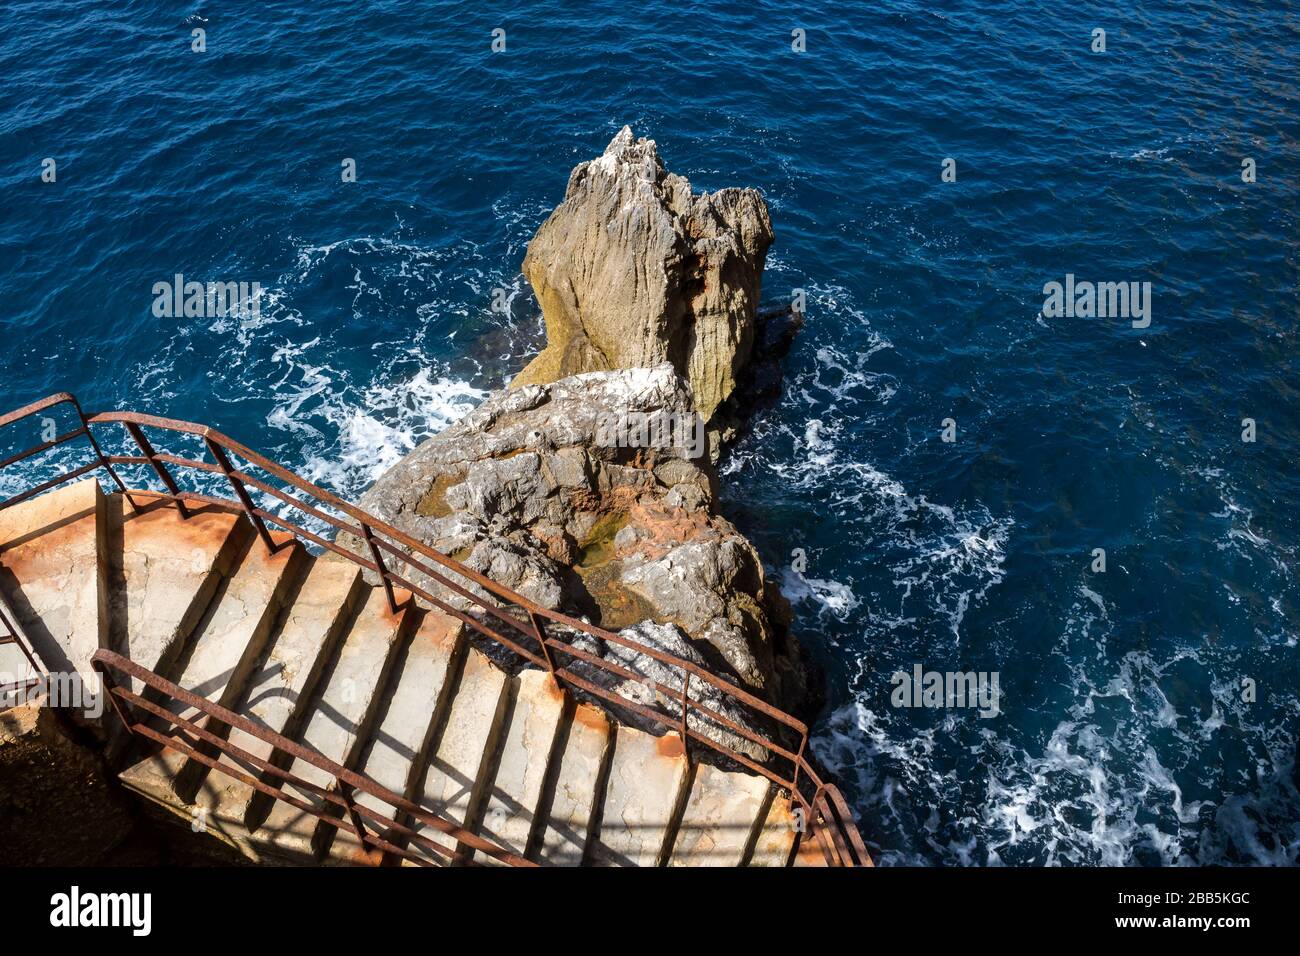 Alte Betontreppen, die eine Klippe mit einem verrosteten Handlauf sägen. Felsen im Mittelmeer neben. Grotta di Nettuno, Insel Sardinien, Italien. Stockfoto